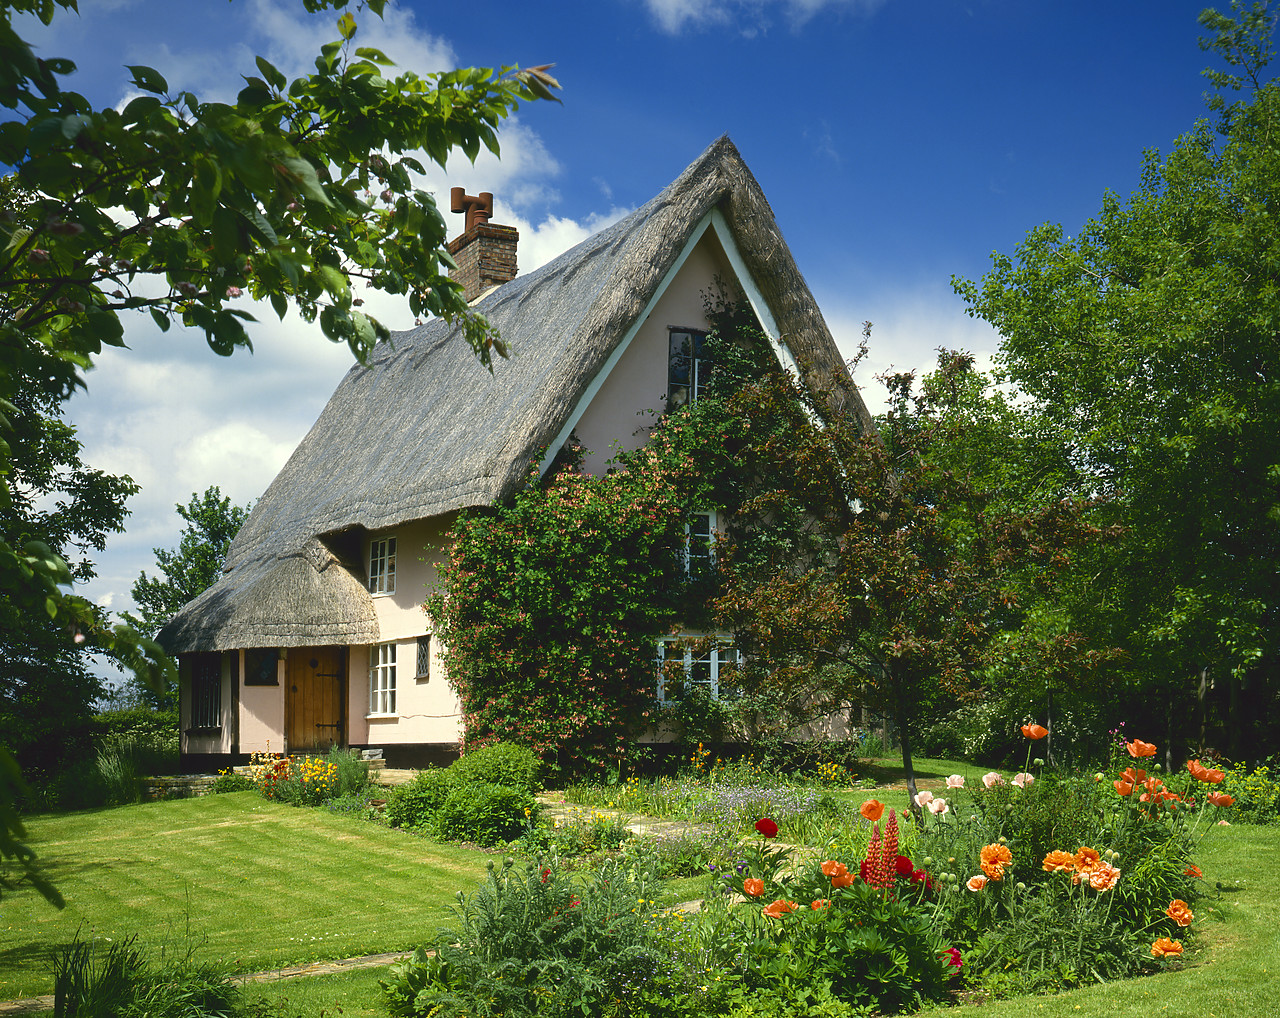 #86713-1 - Thatched Cottage & Garden, near Dennington, Suffolk, England